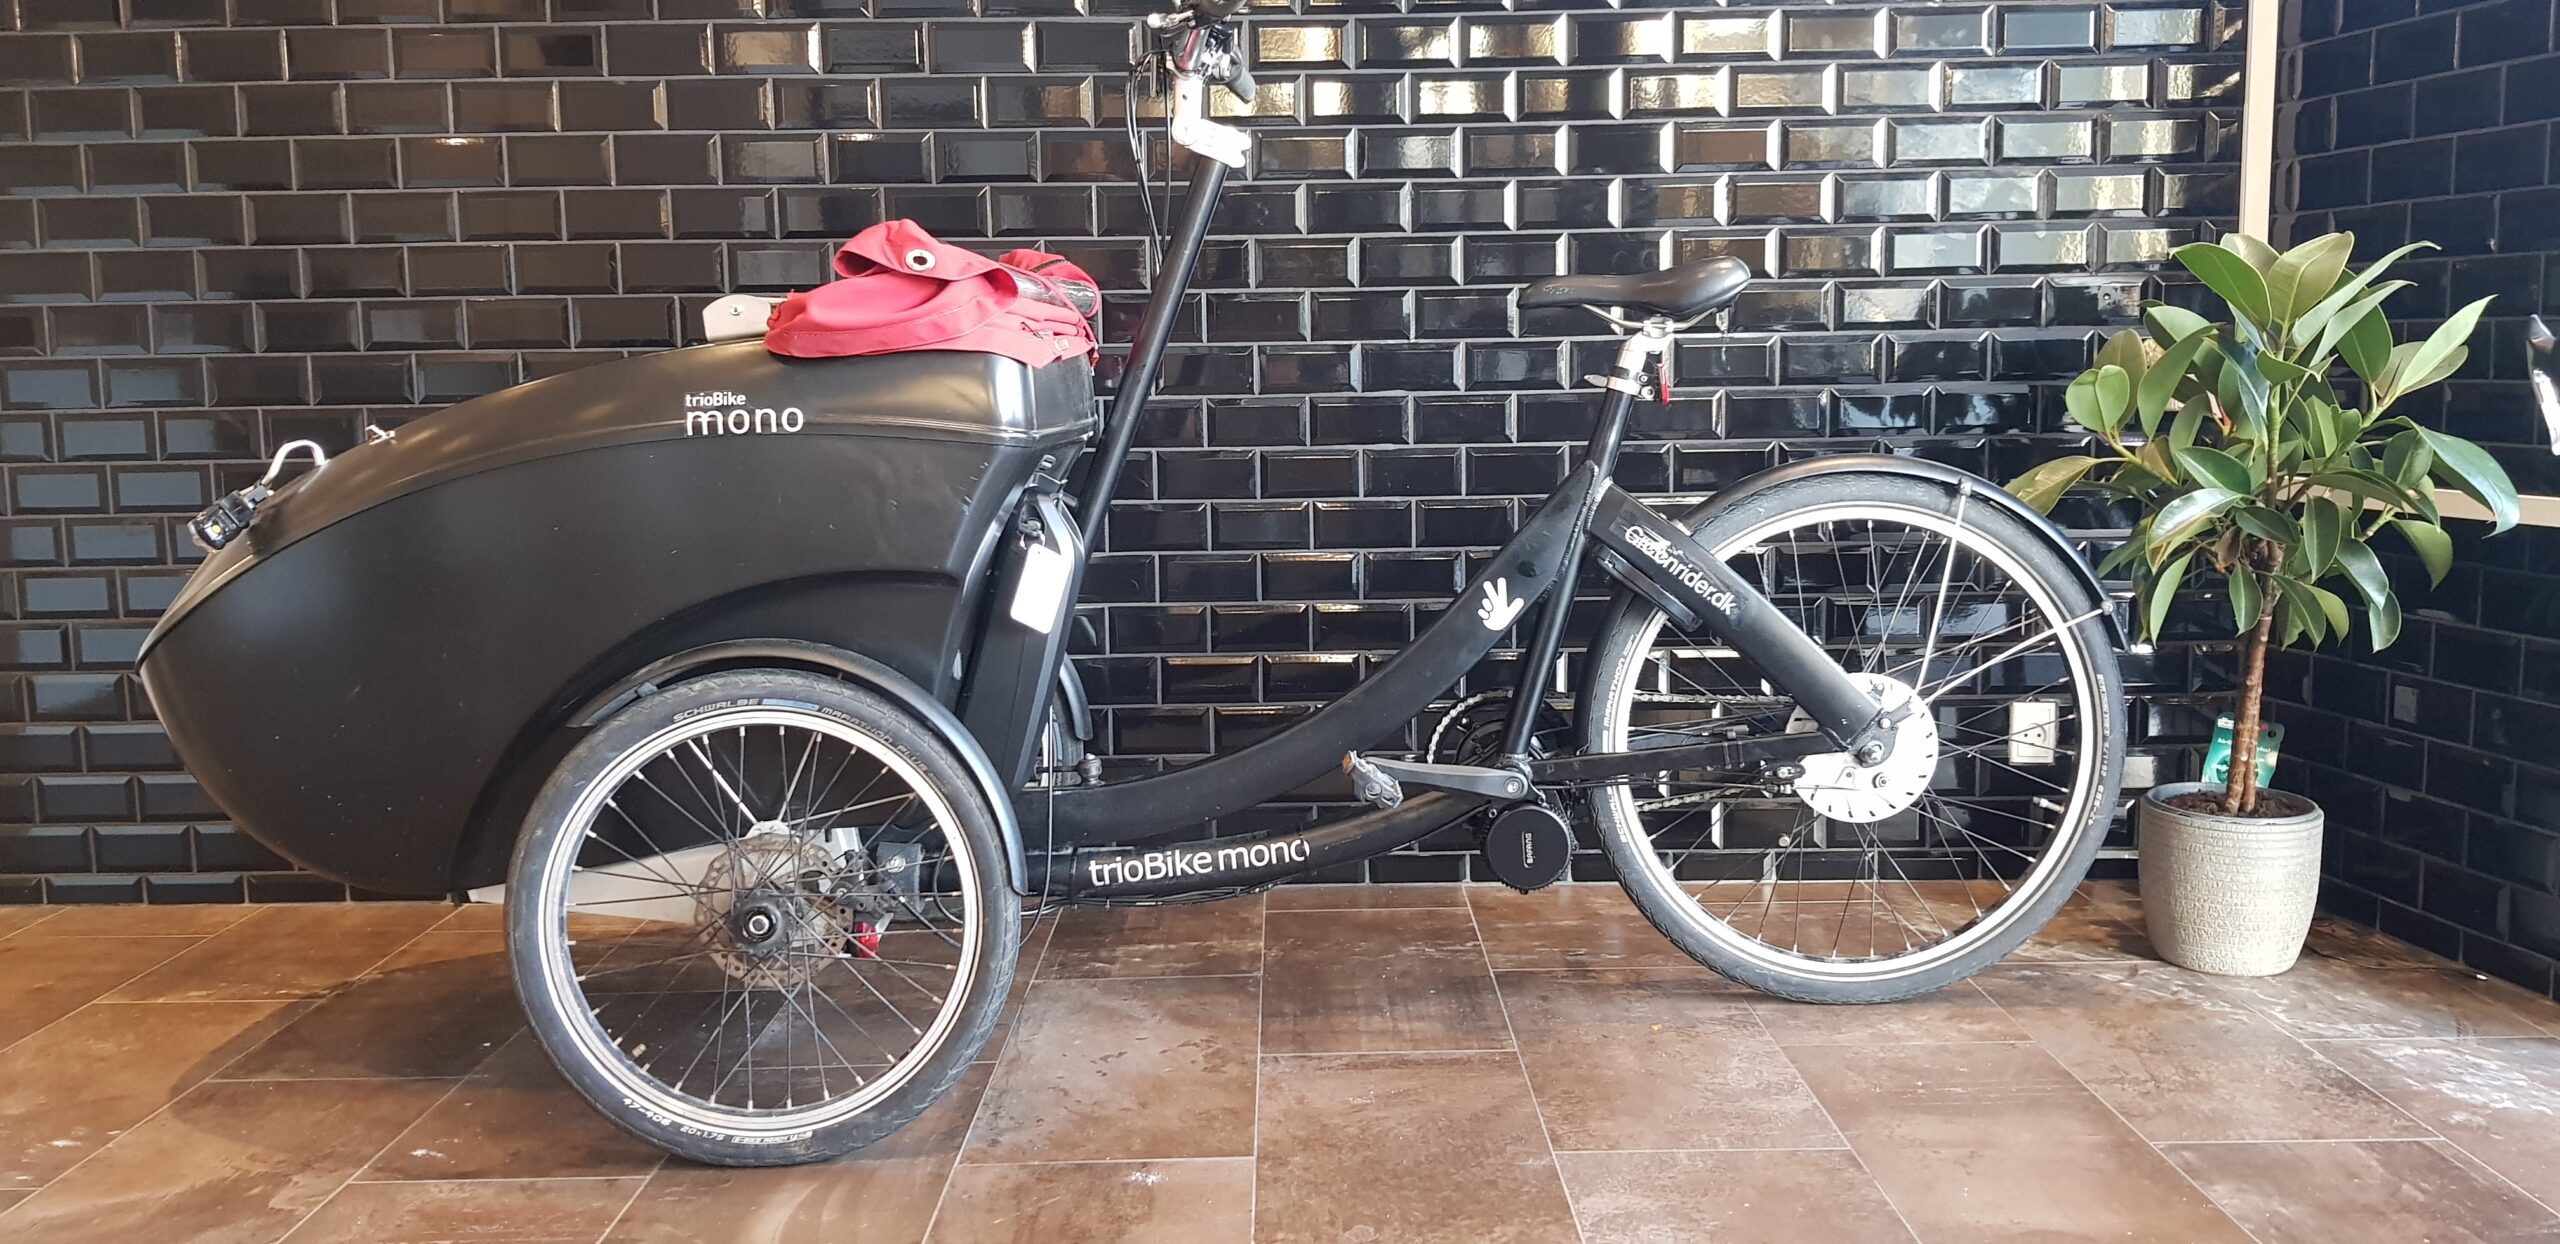 Trio bike mono elcykel kit scaled